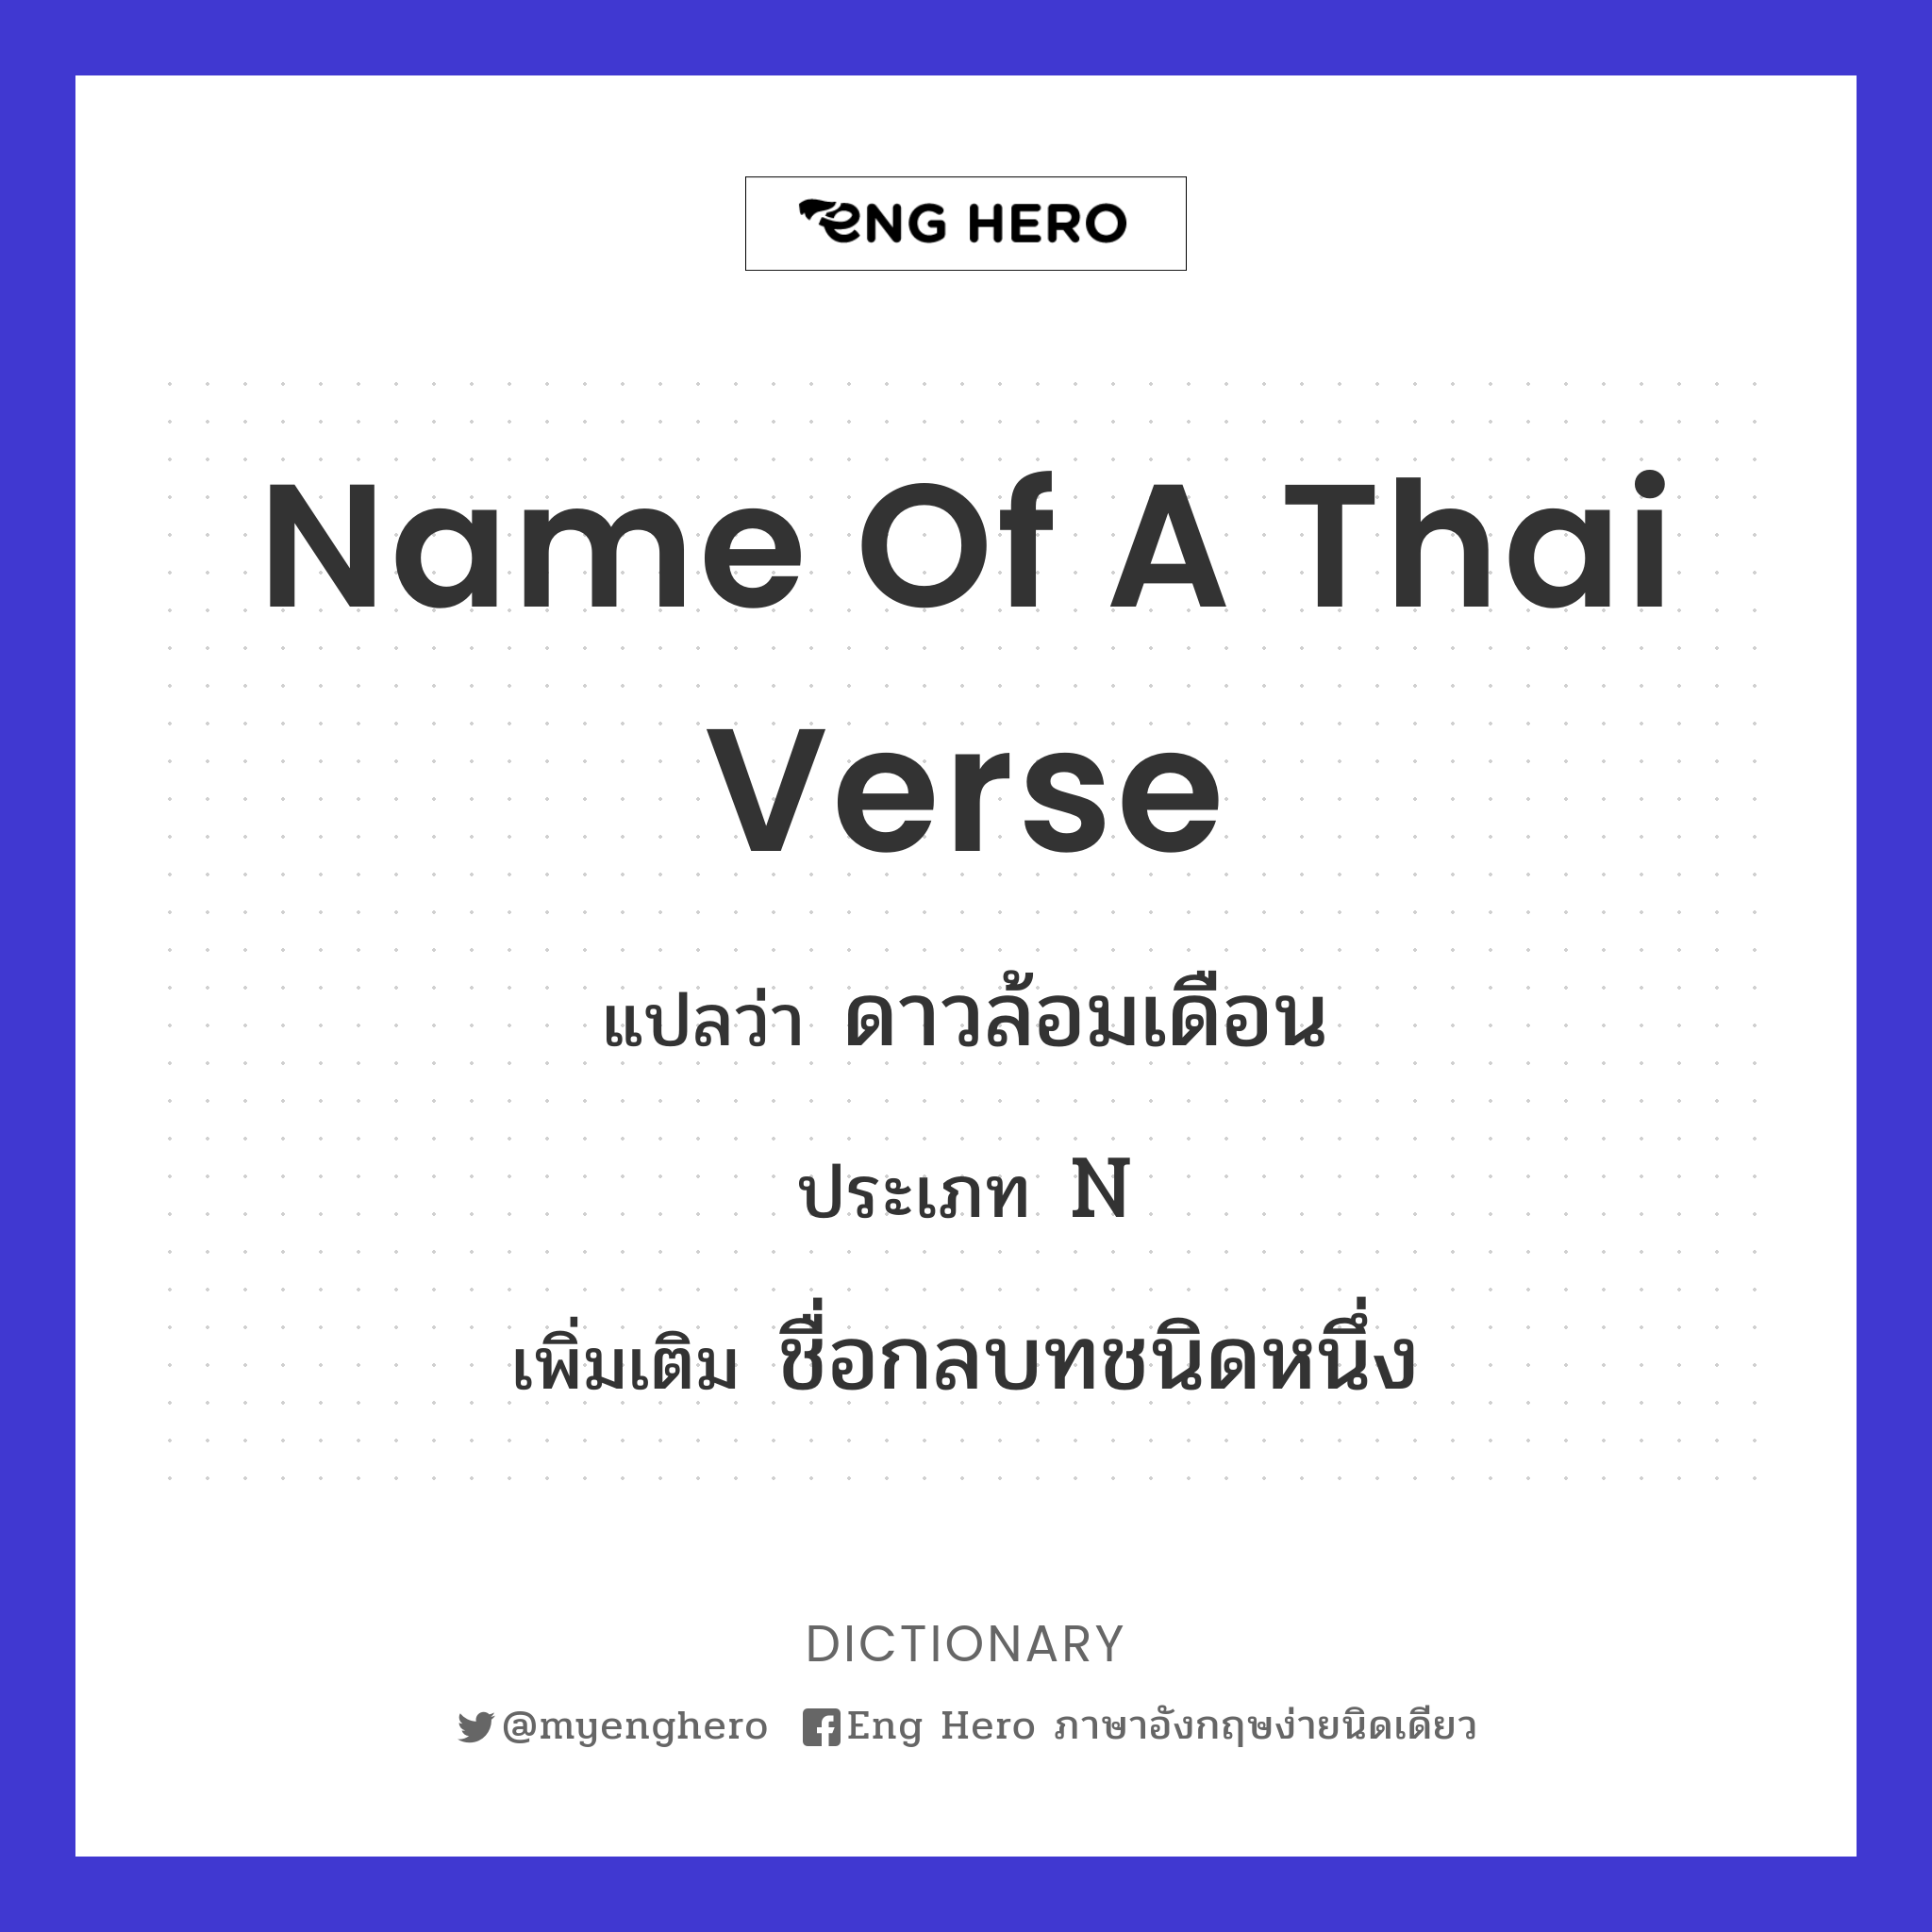 name of a Thai verse